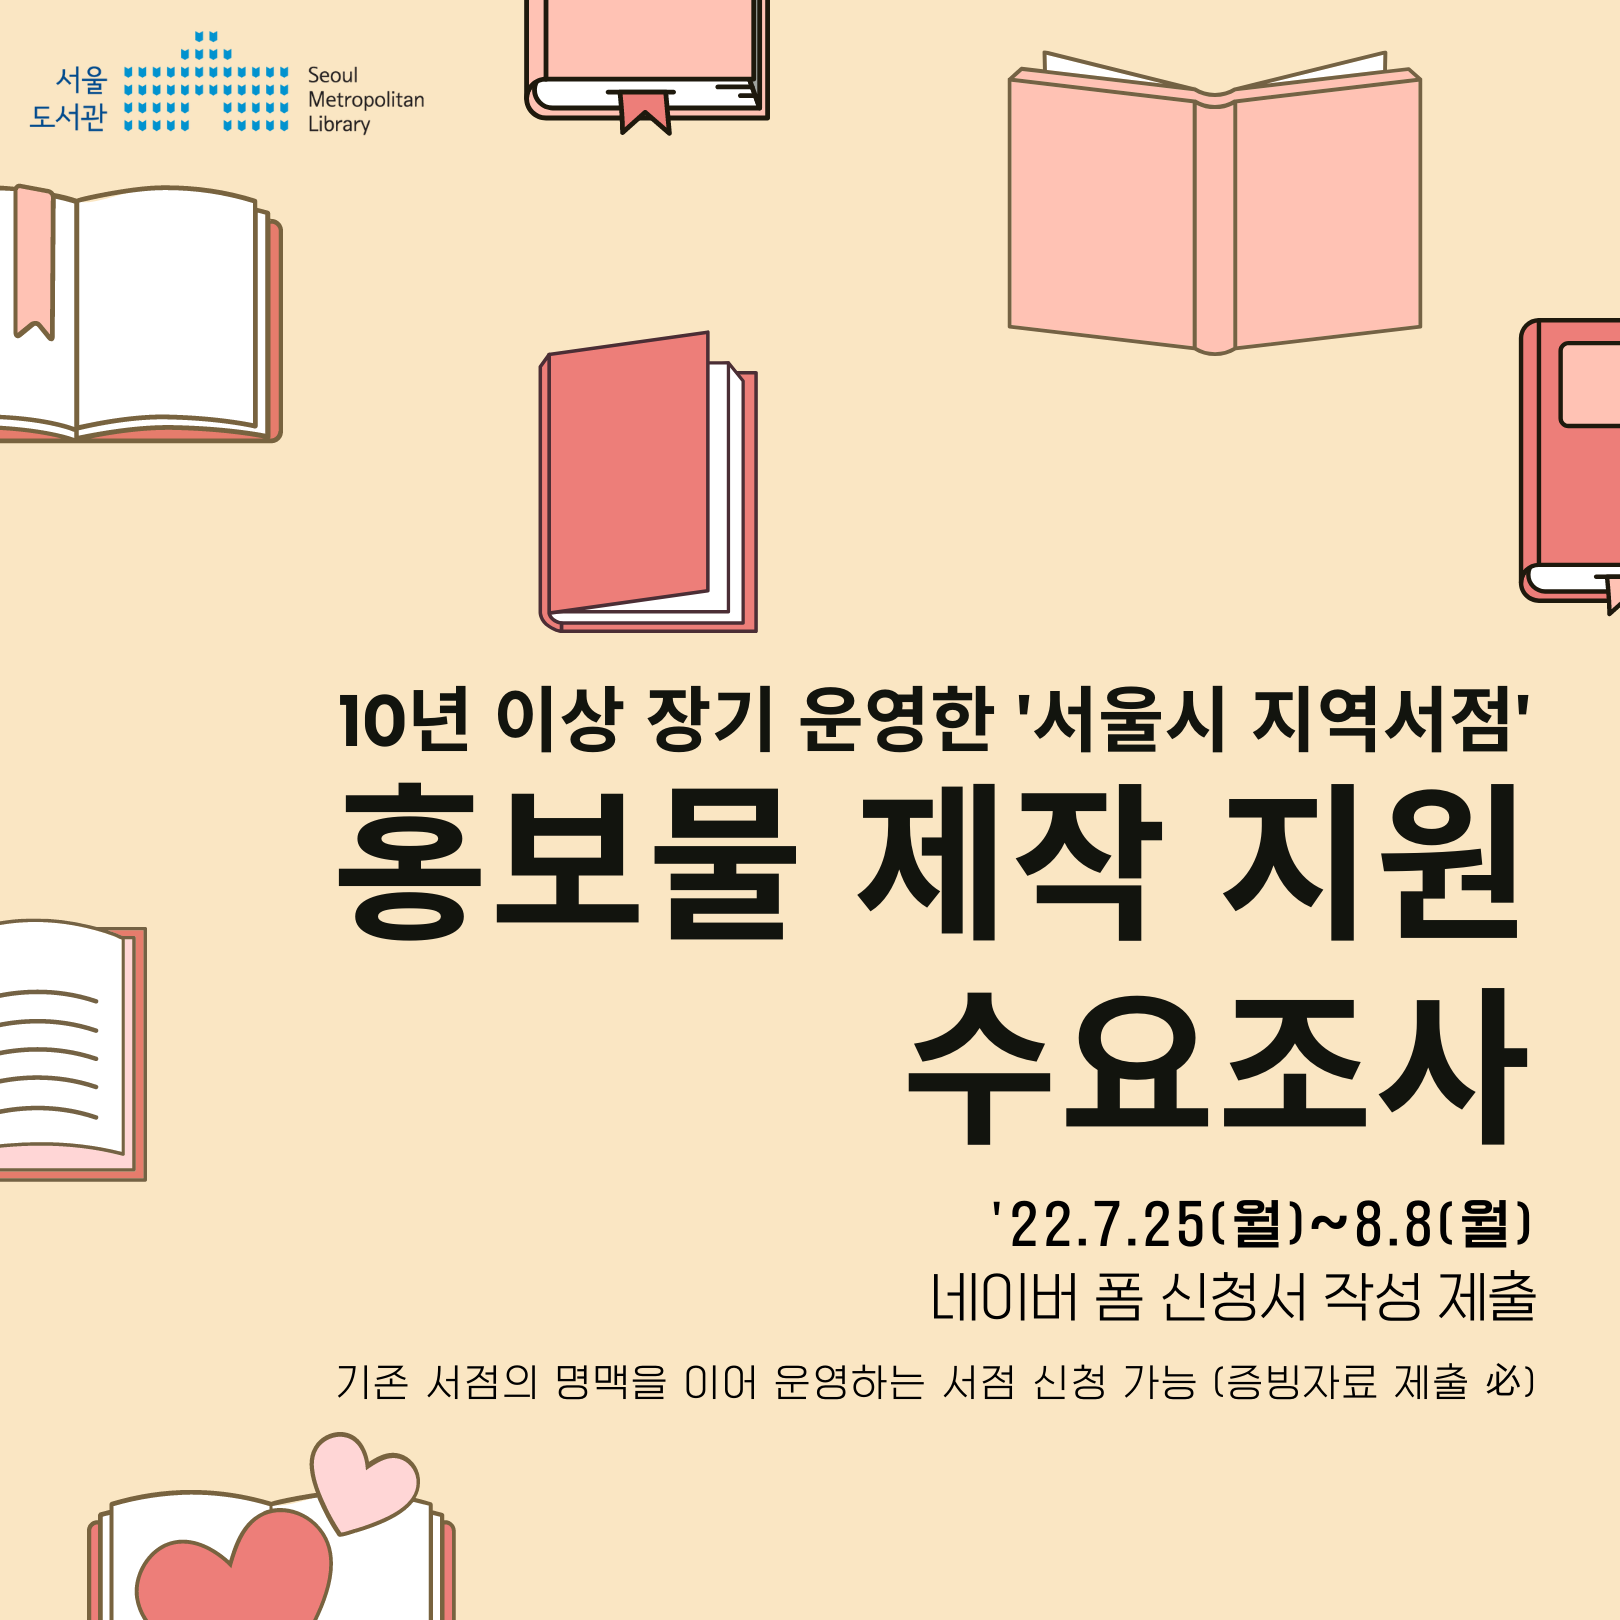 10년 이상 장기 운영한 '서울시 지역서점' 홍보물 제작 지원 안내001